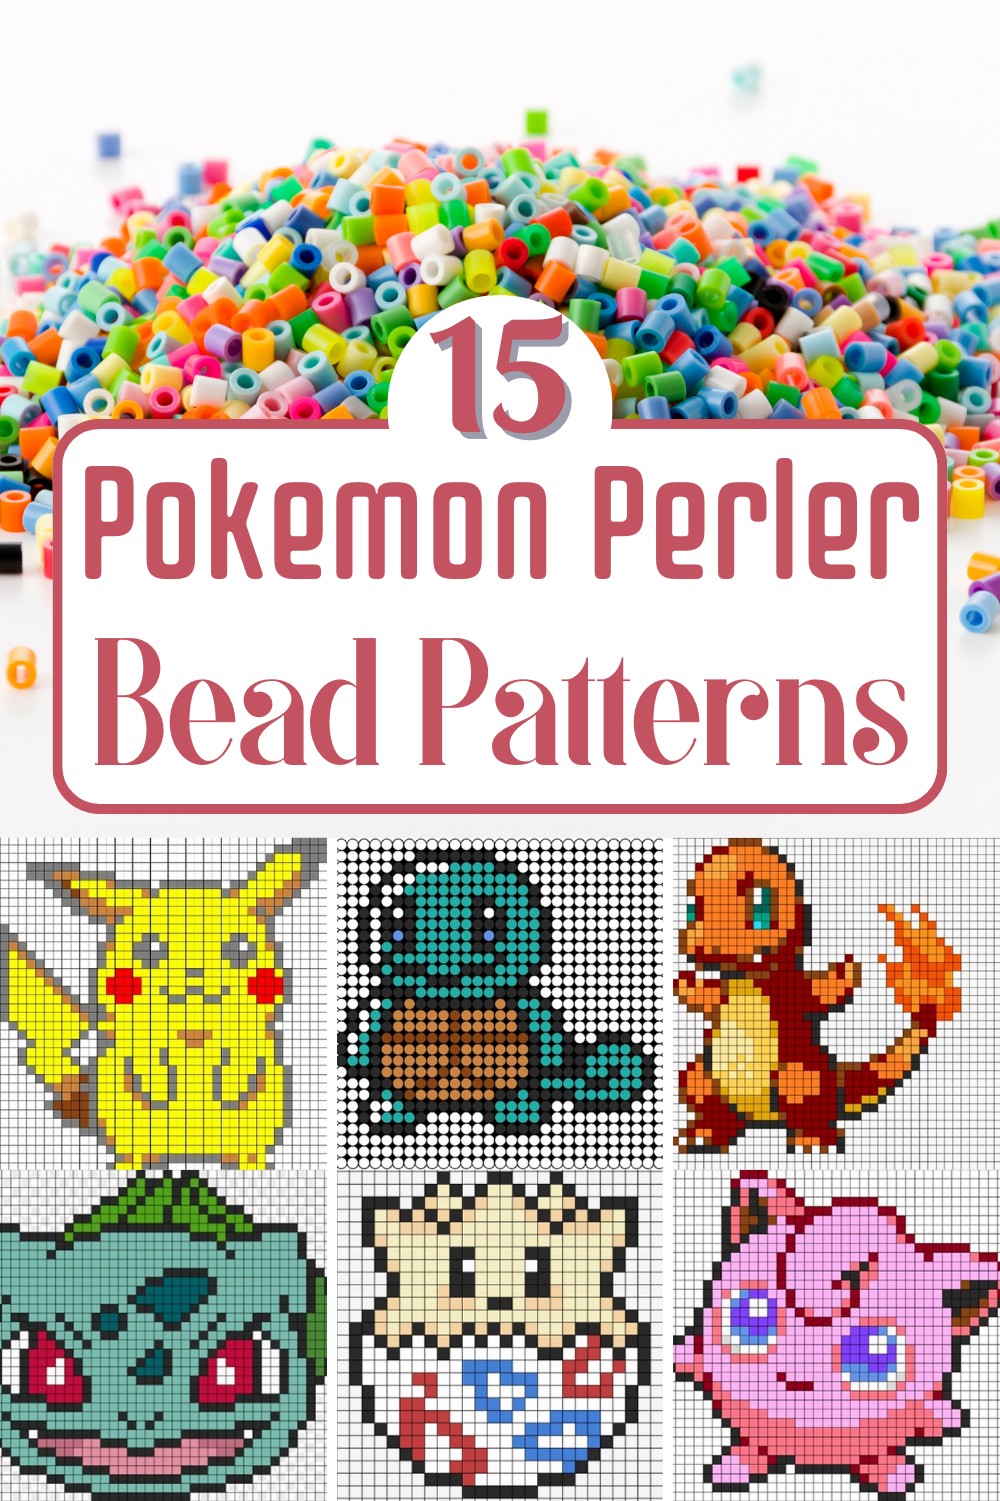 Easy Pokemon Perler Bead Patterns